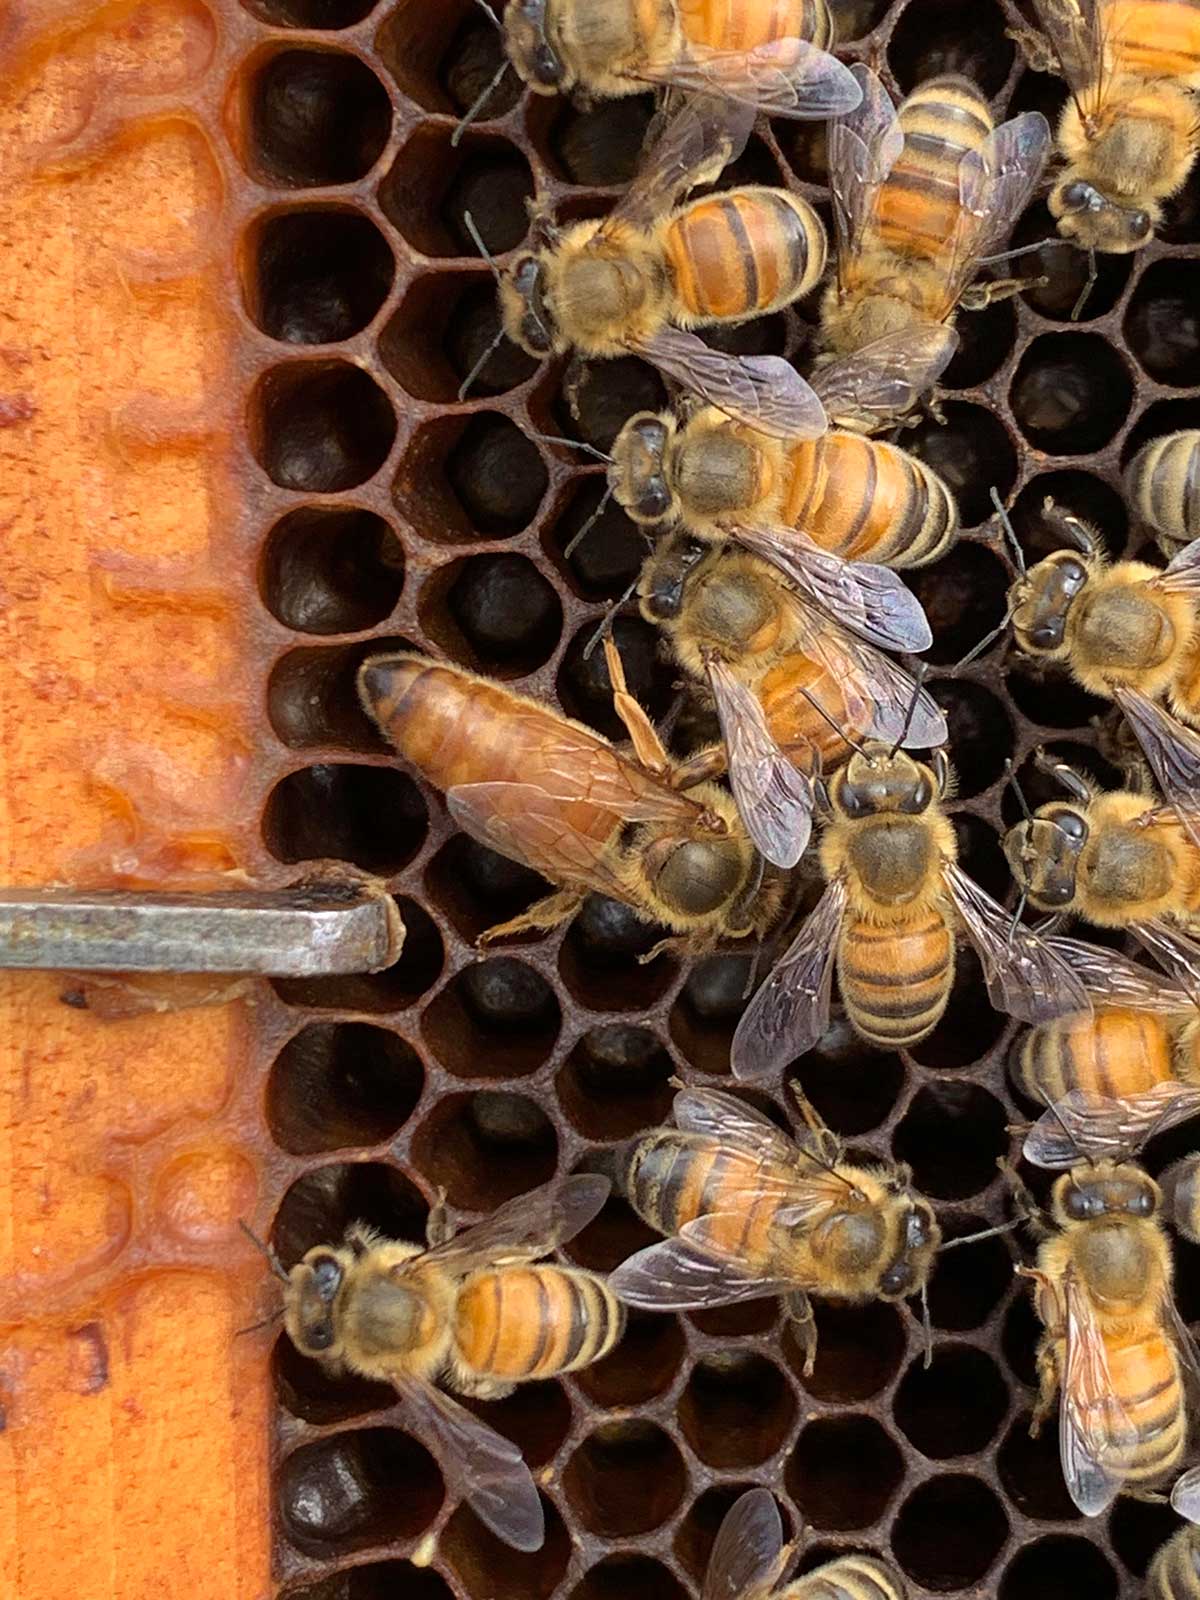 About Rainbow Bees | Hawaiian Honey Company – Hawaiian Rainbow Bees